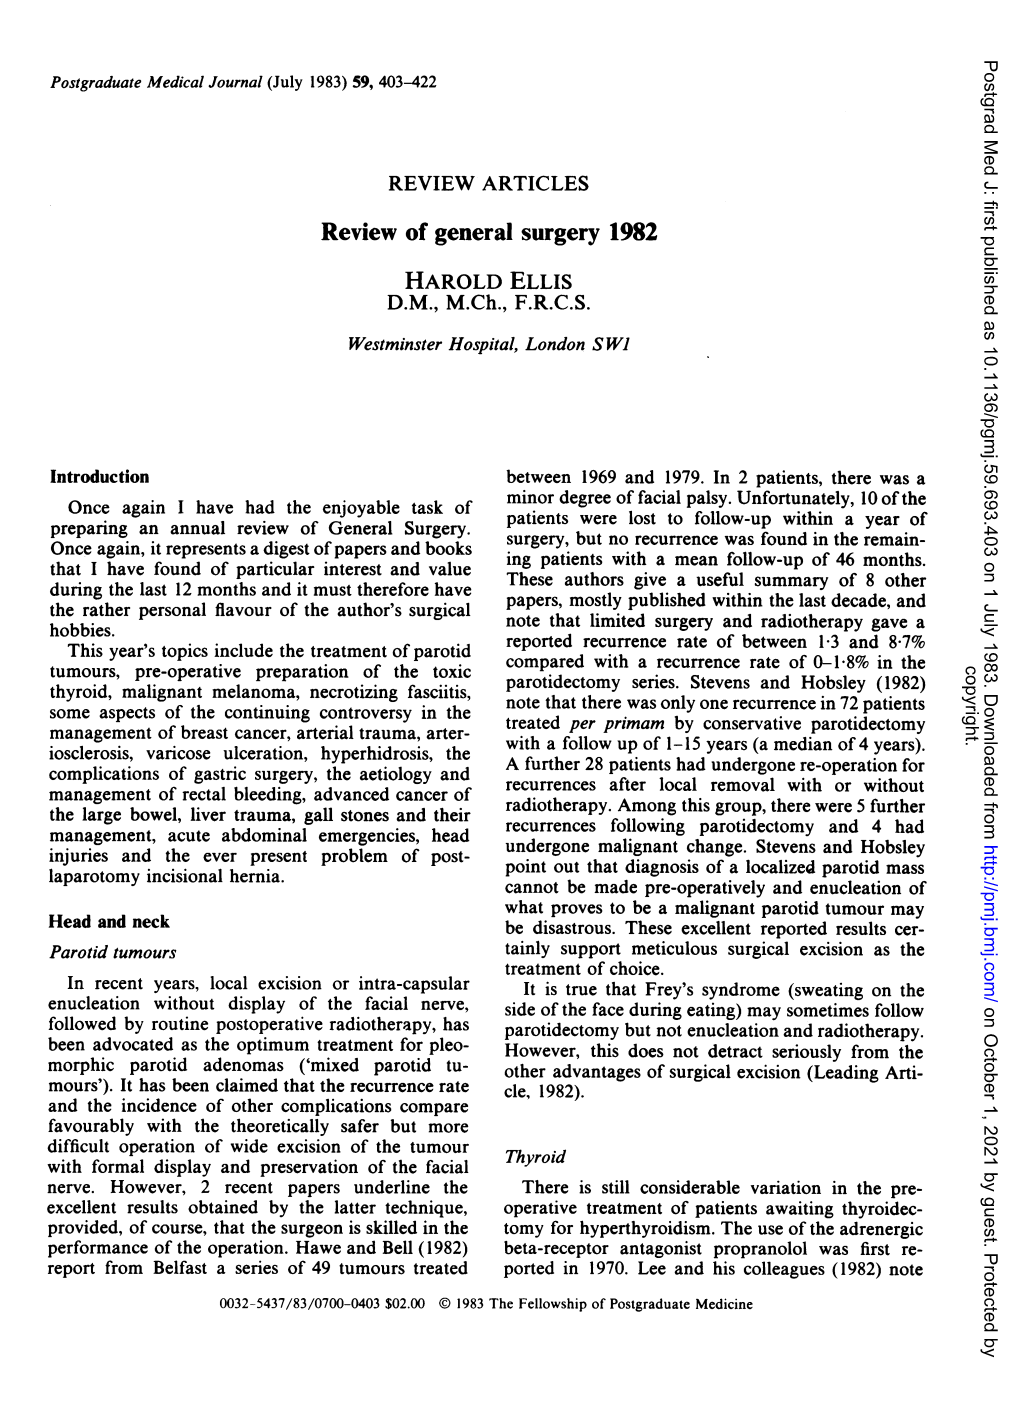 Review of General Surgery 1982 HAROLD ELLIS D.M., M.Ch., F.R.C.S